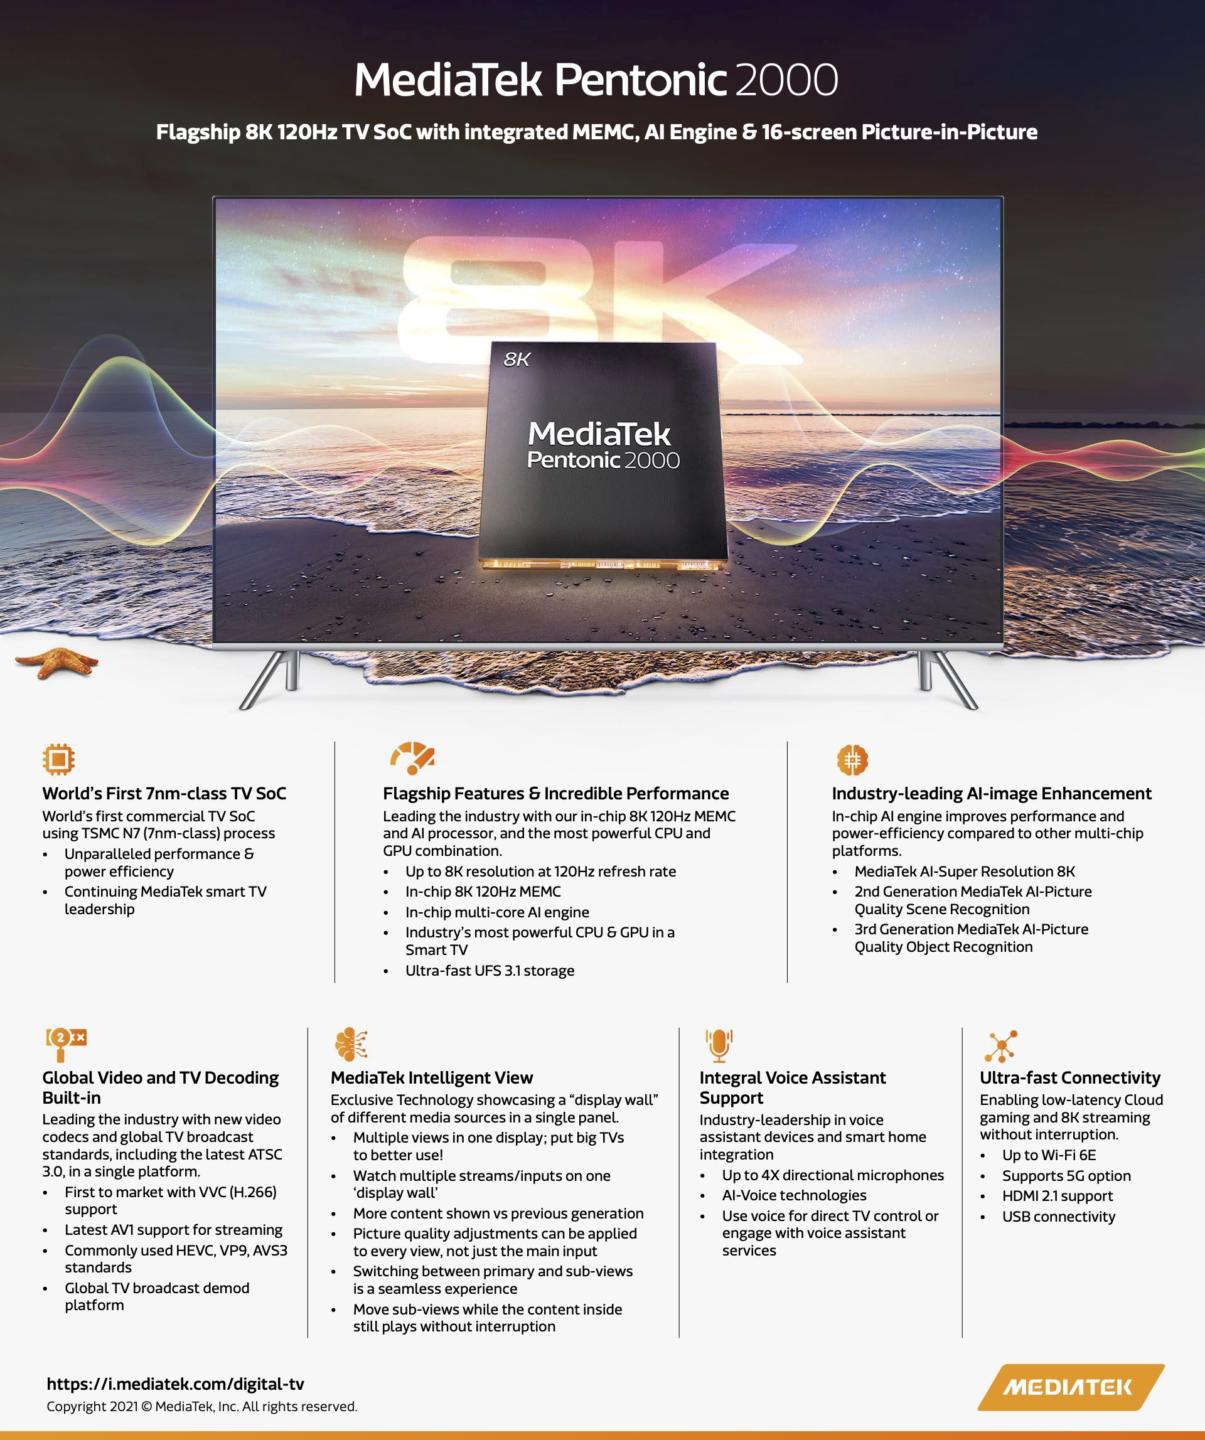 MediaTek công bố dòng chip Pentonic mới cho TV thông minh với Pentonic 2000 cho TV 8K 120Hz Flagship